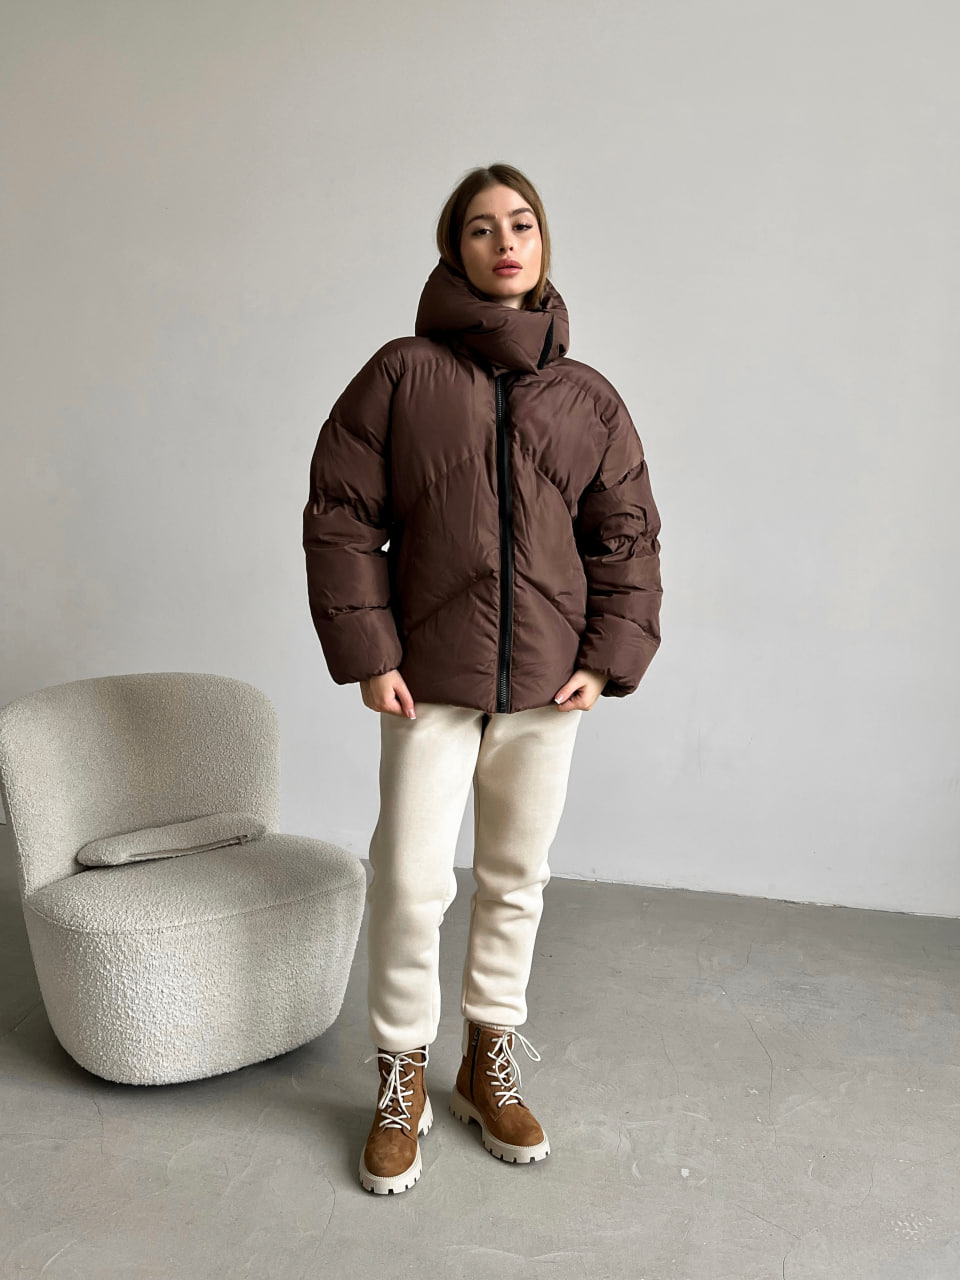 Женская зимняя куртка пуховик оверсайз Reload - Quadro W коричневая - Фото 2